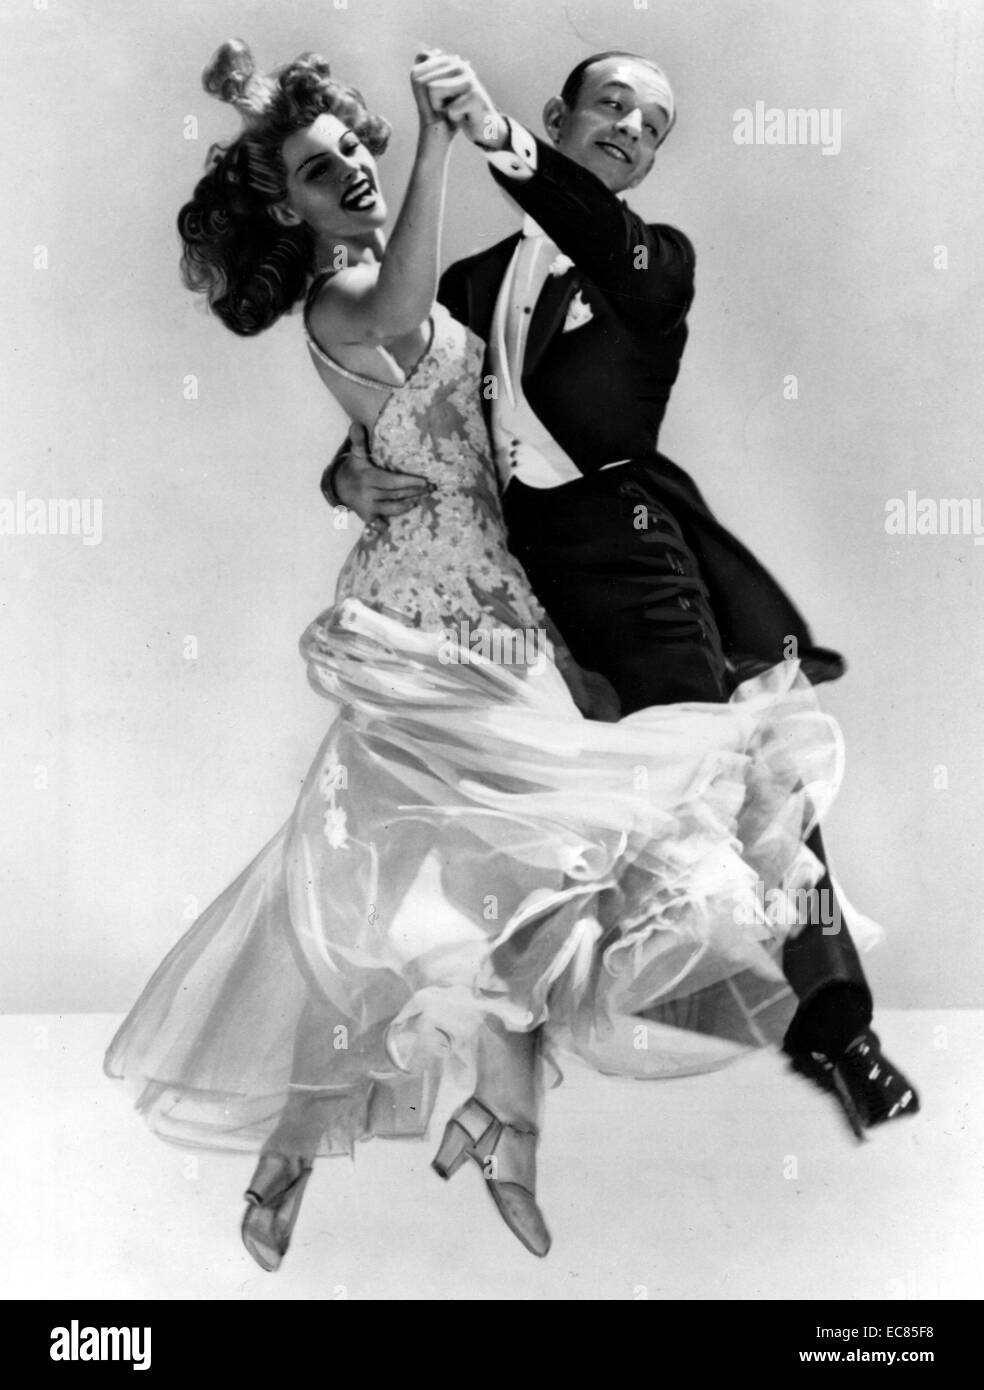 Film still aus "Du wirst nie Get Rich" starrte Fred Astaire (1899-1987) und Rita Hayworth (1918-1987). Datiert 1941 Stockfoto